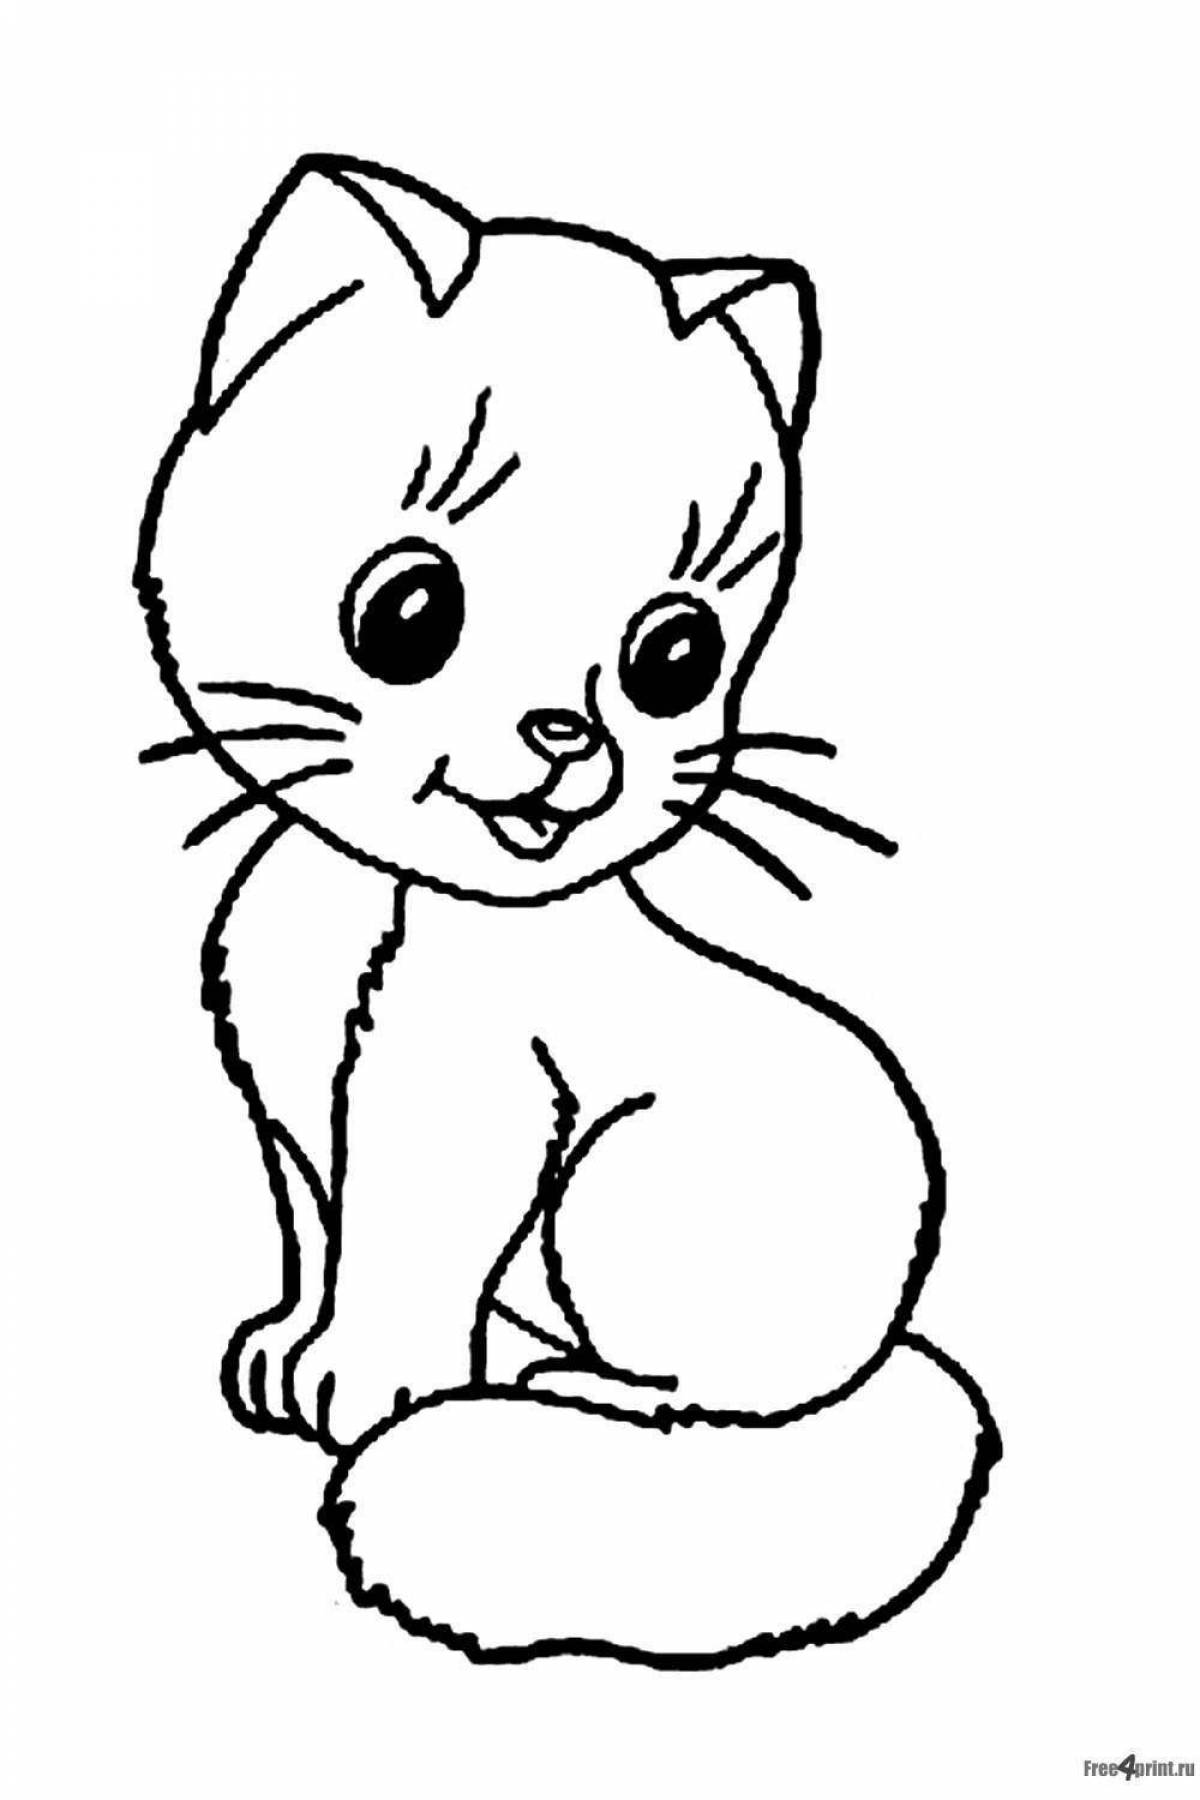 Joyful little cat coloring book